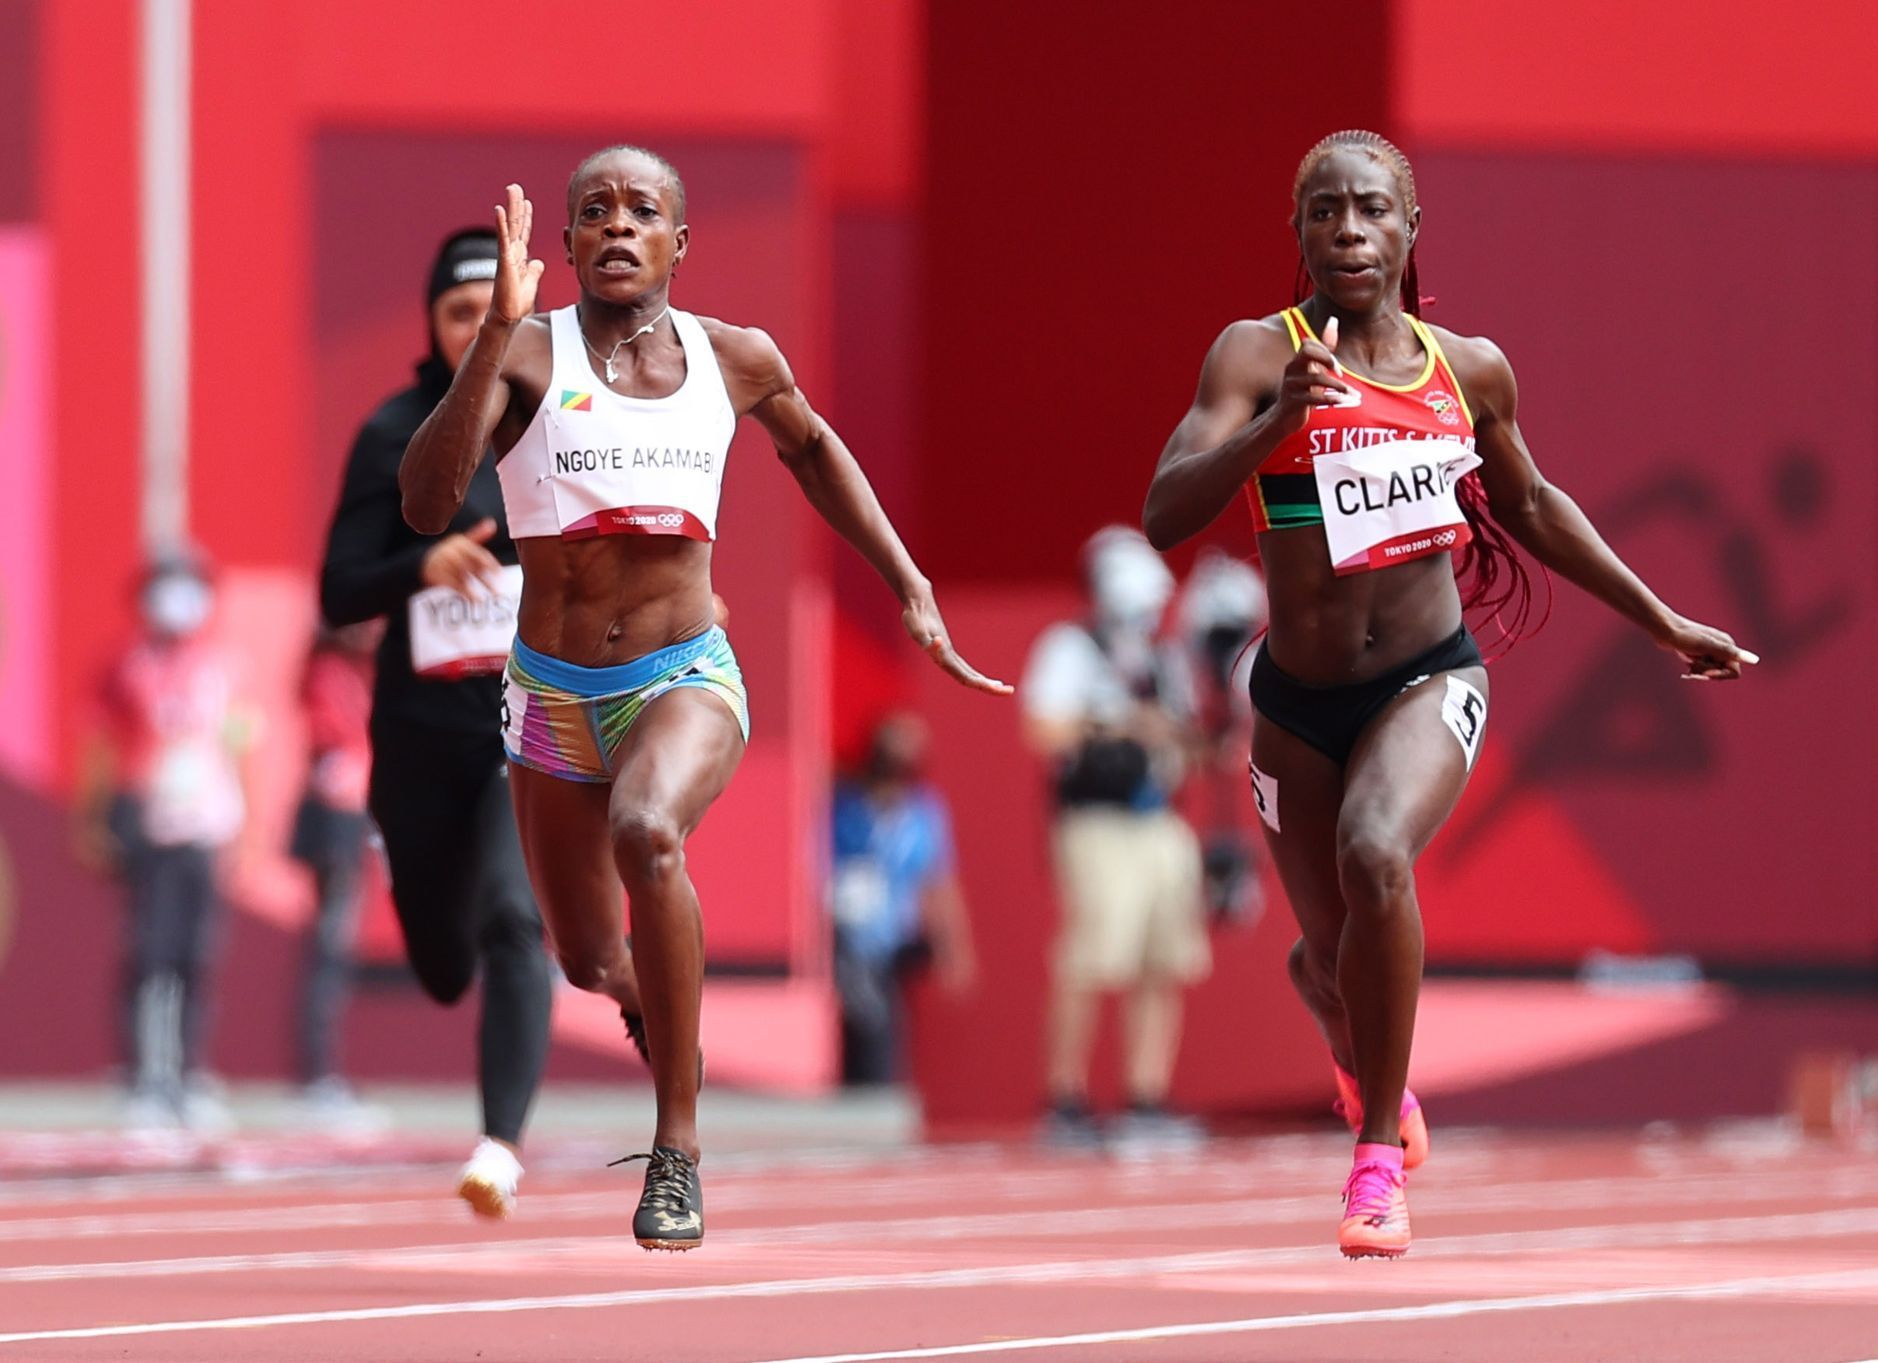 Atletika - kvalifikační rozběh na 100m žen